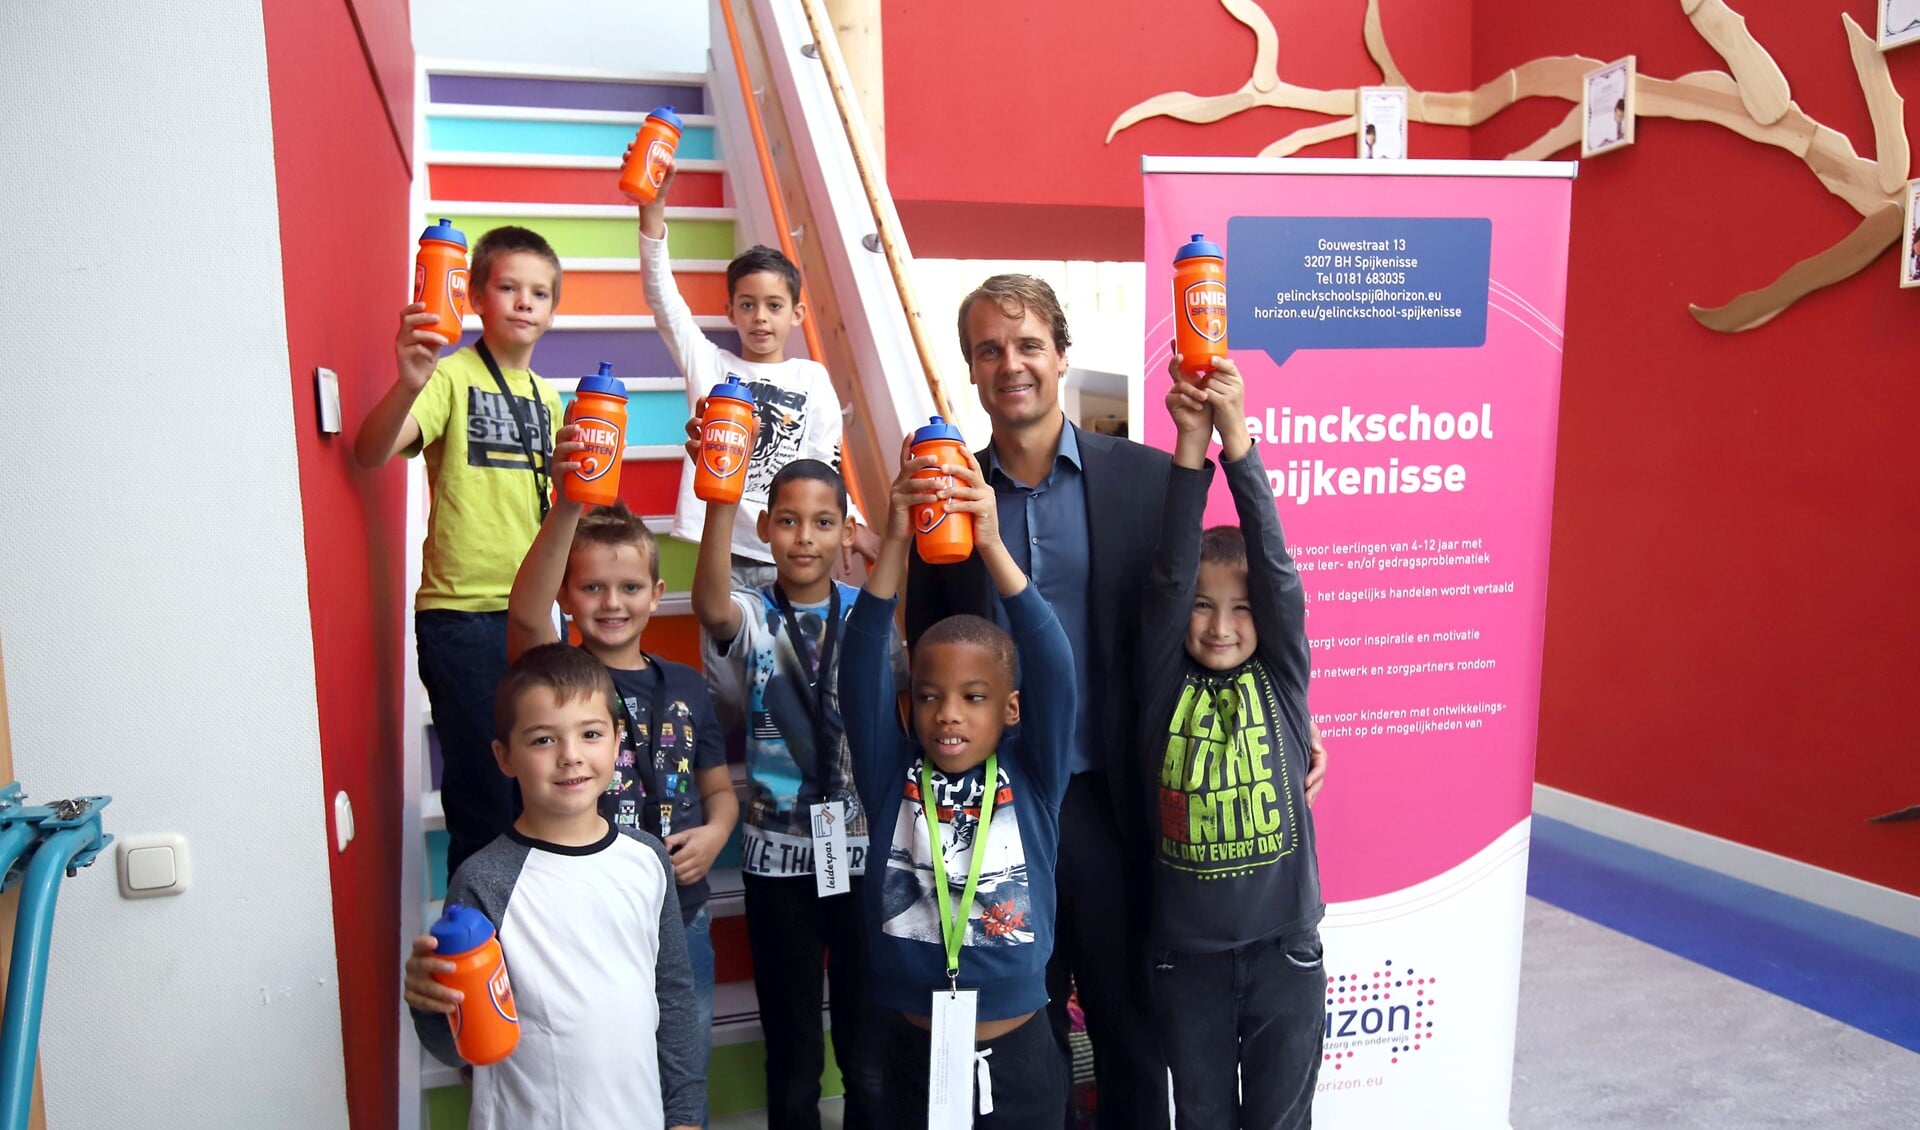 Wethouder Martijn Hamerslag geeft het startsein voor de High Five campagne op de Gelinckschool. 